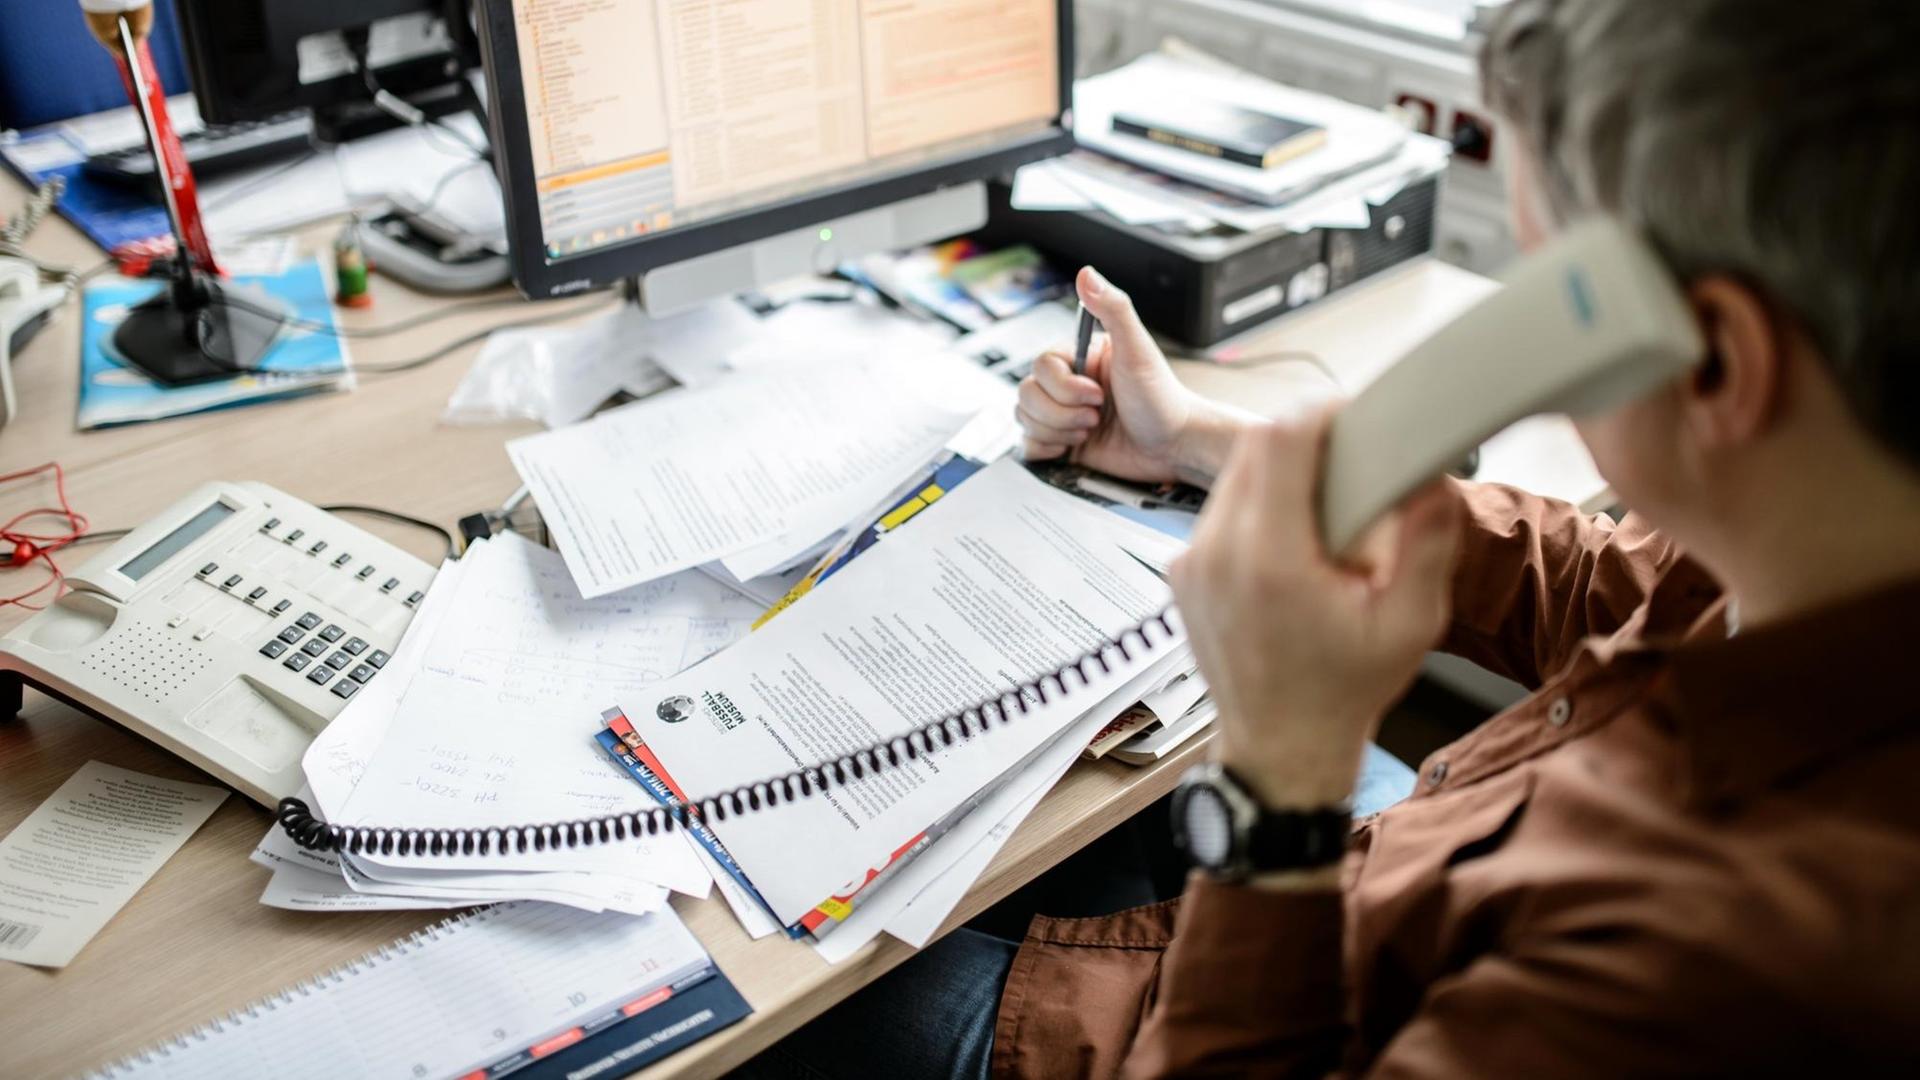 Ein Angestellter sitzt in einem Büro an seinem Schreibtisch und telefoniert vor einem großen Stapel von Unterlagen, aufgenommen am 04.02.2015 in Dresden (Sachsen).